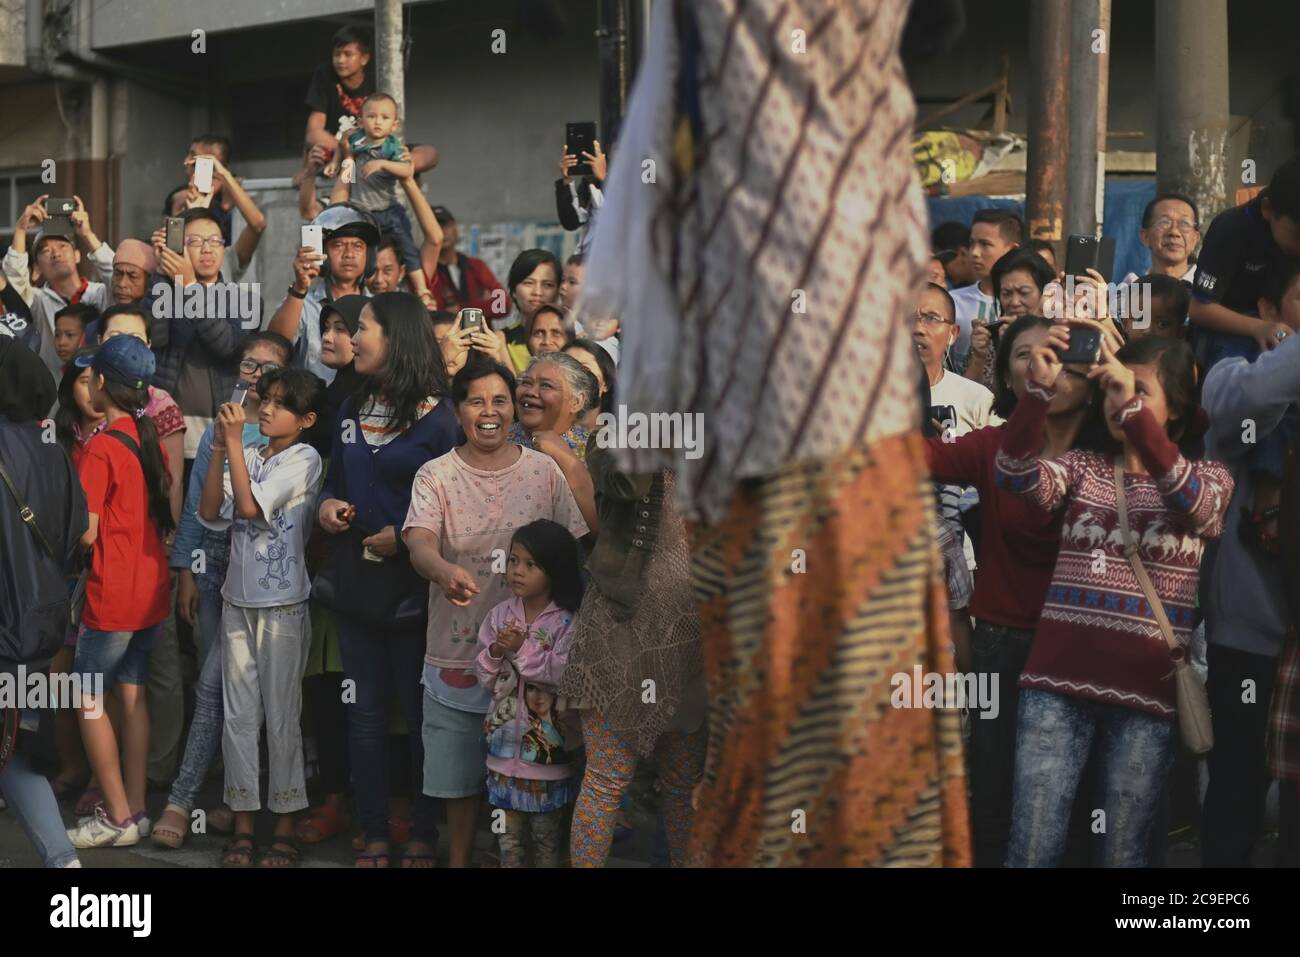 Gli spettatori si rallegrano e scattano foto di camminatori con palafitte che indossano costumi di carattere wayang durante la sfilata culturale del Bandung Lantern Festival 2015. Foto Stock